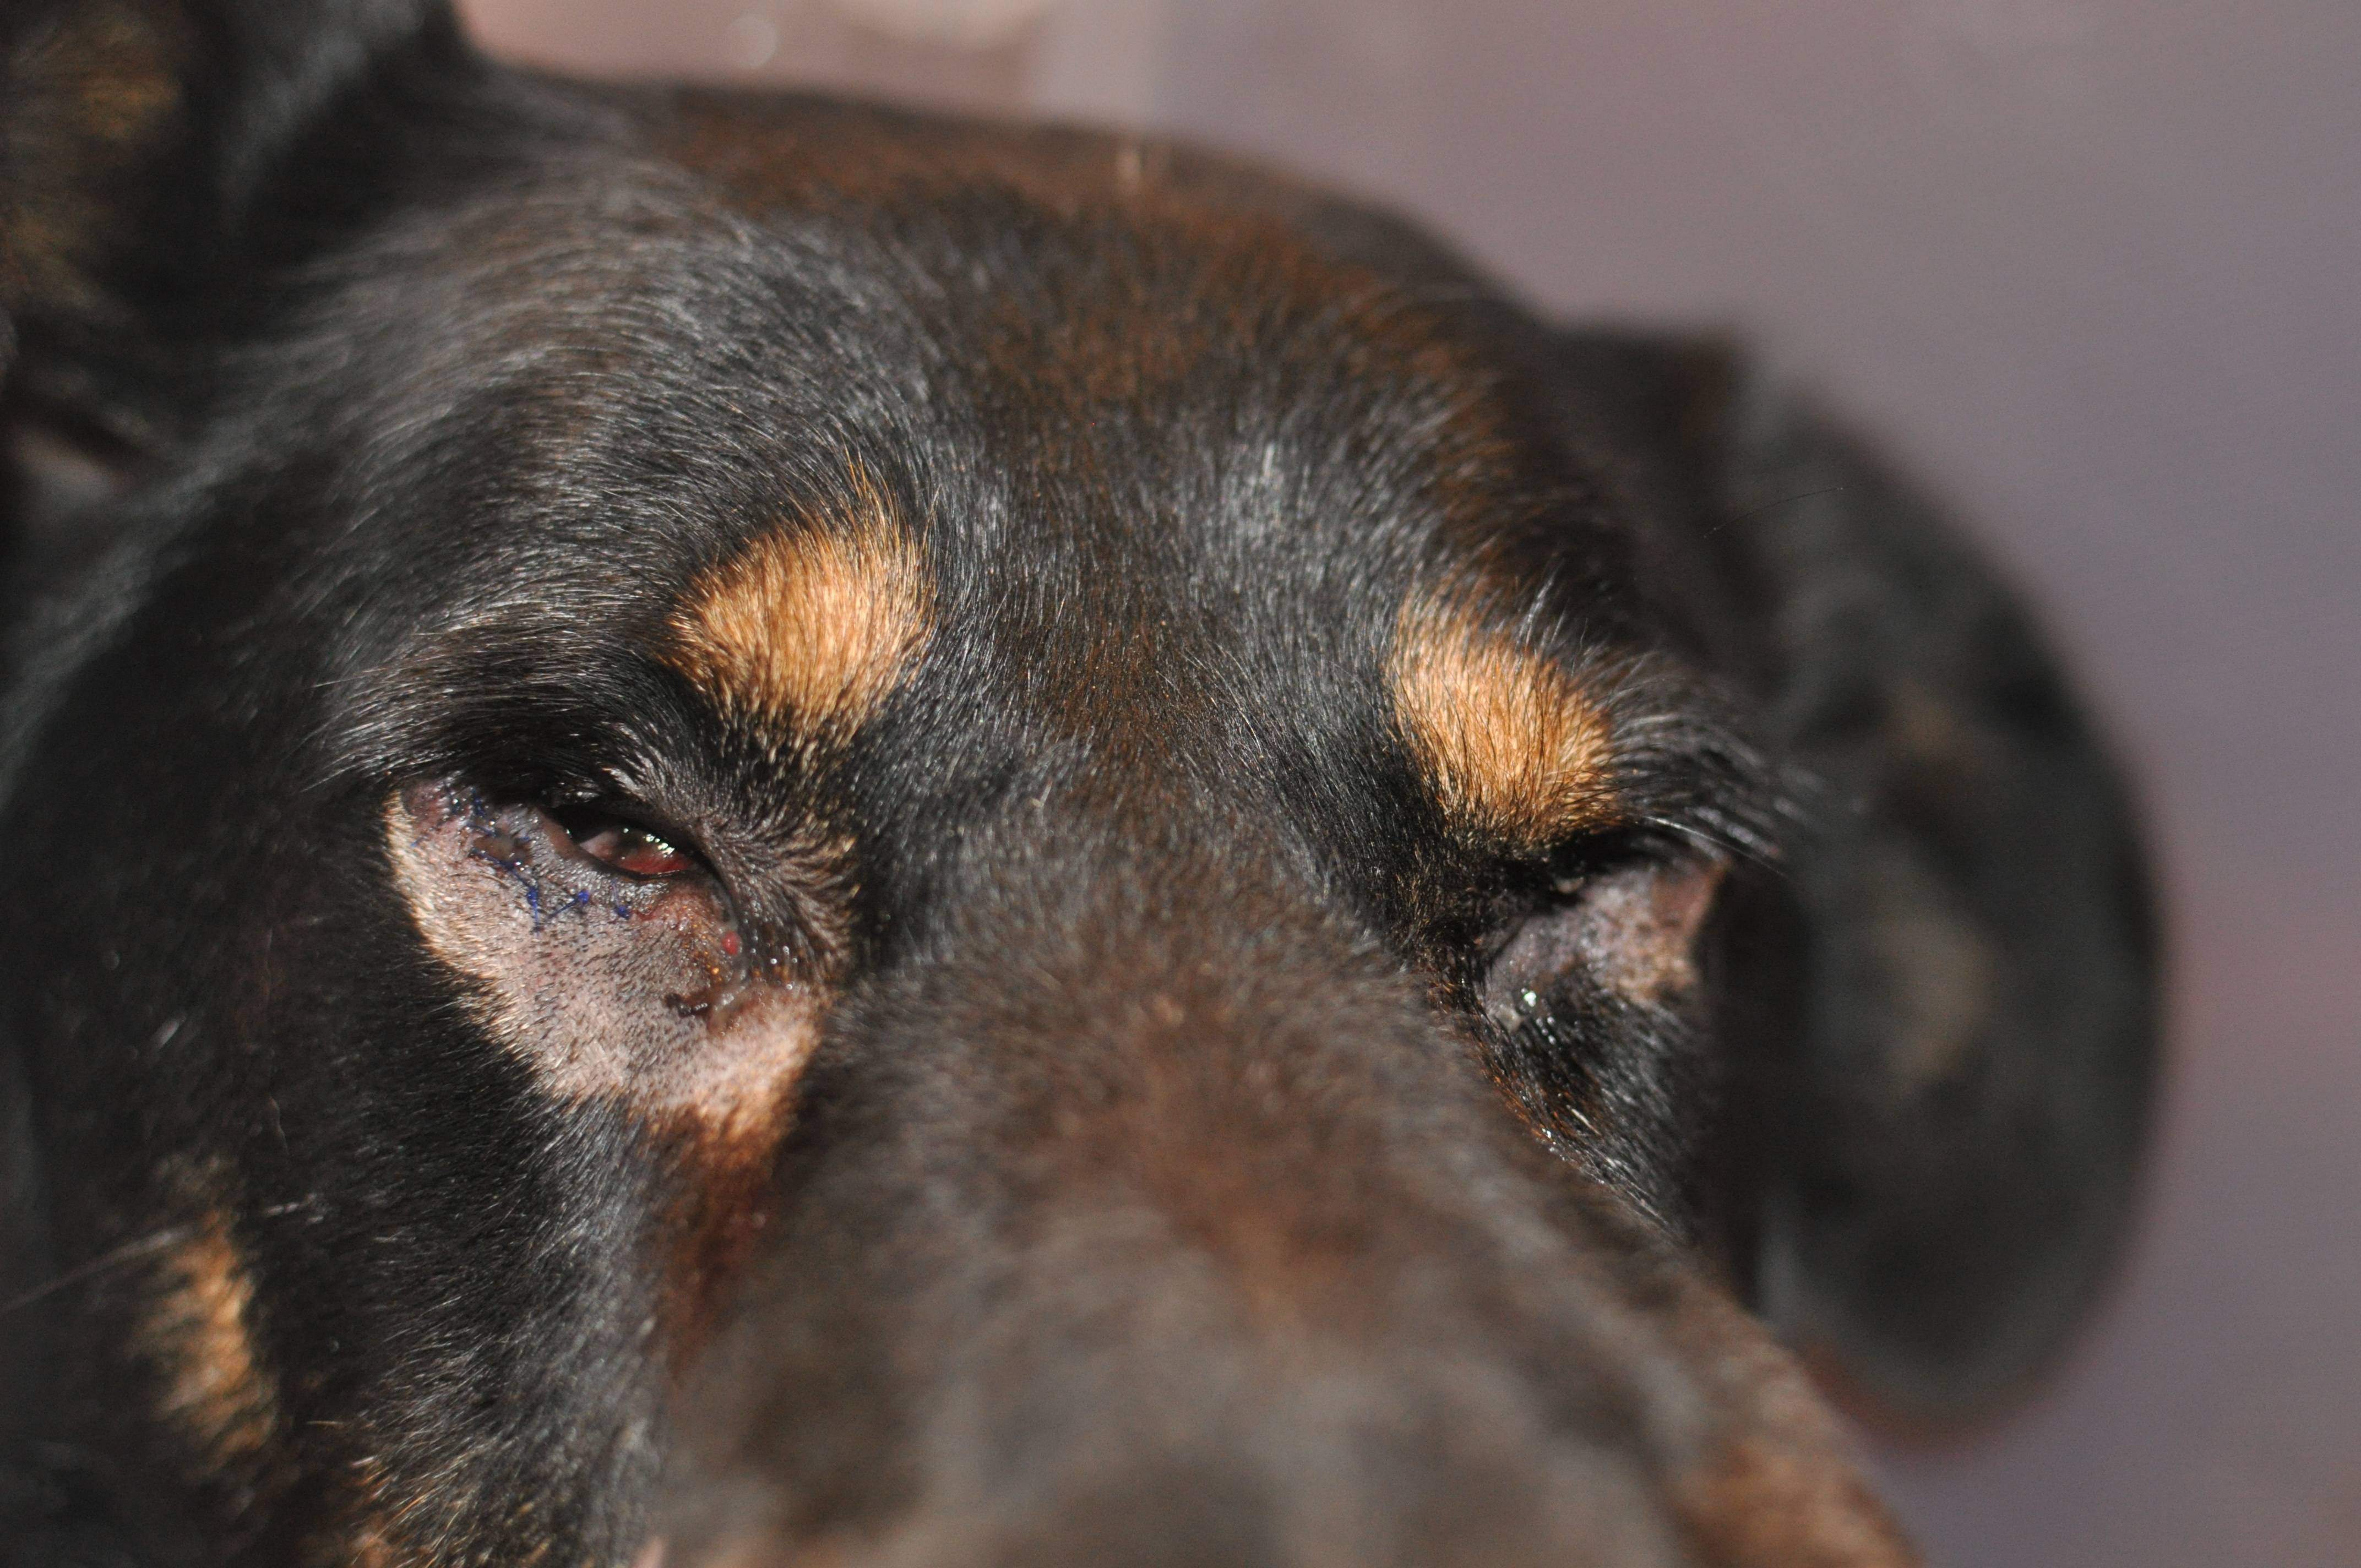 Панлейкопения у собаки - симптомы и лечение чумки